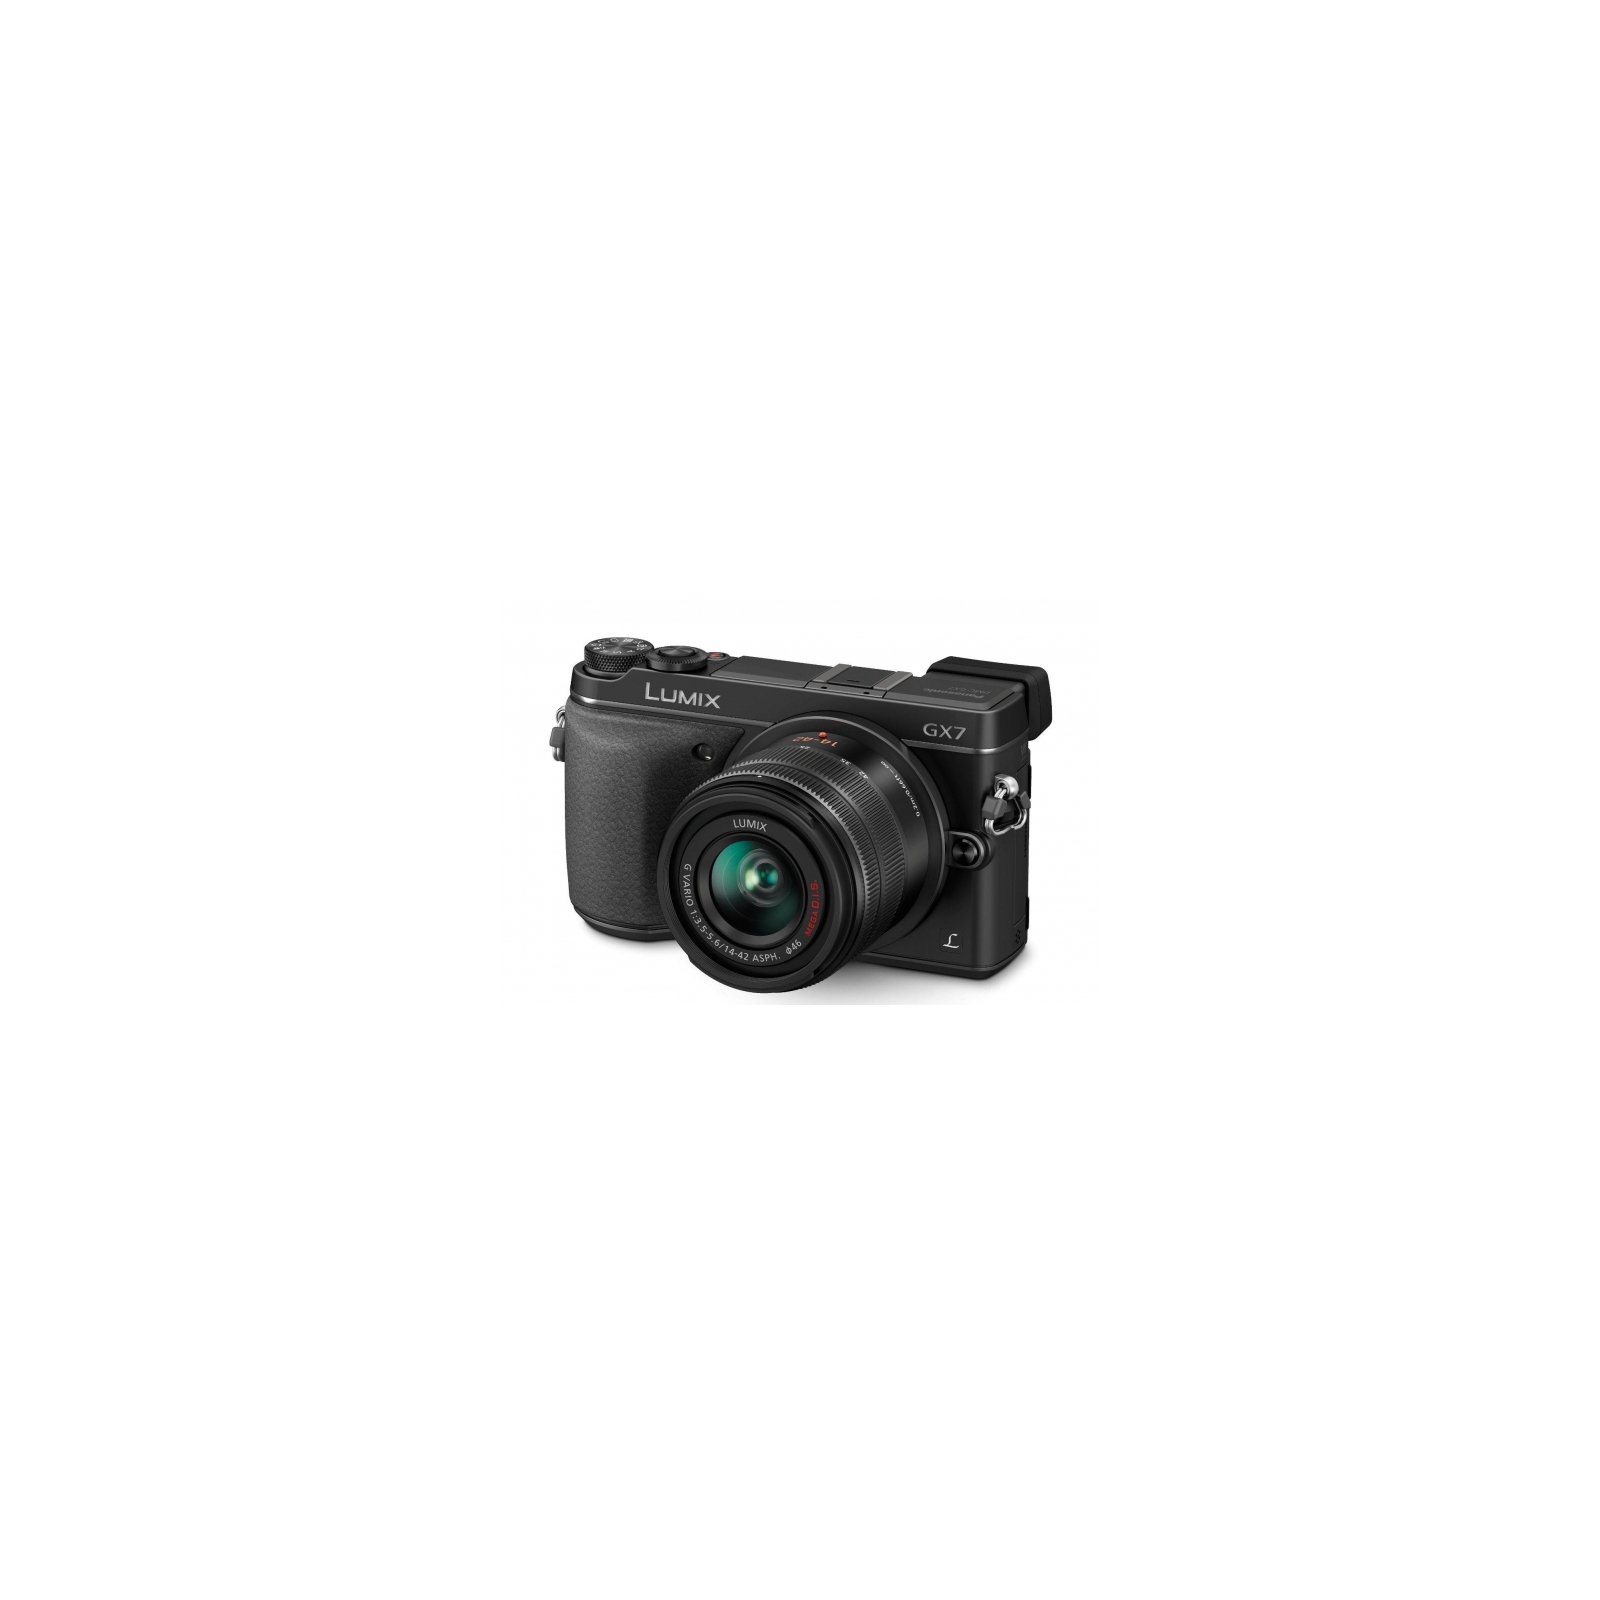 Цифровой фотоаппарат Panasonic DMC-GX7 Kit 14-42mm black (DMC-GX7KEE-K)